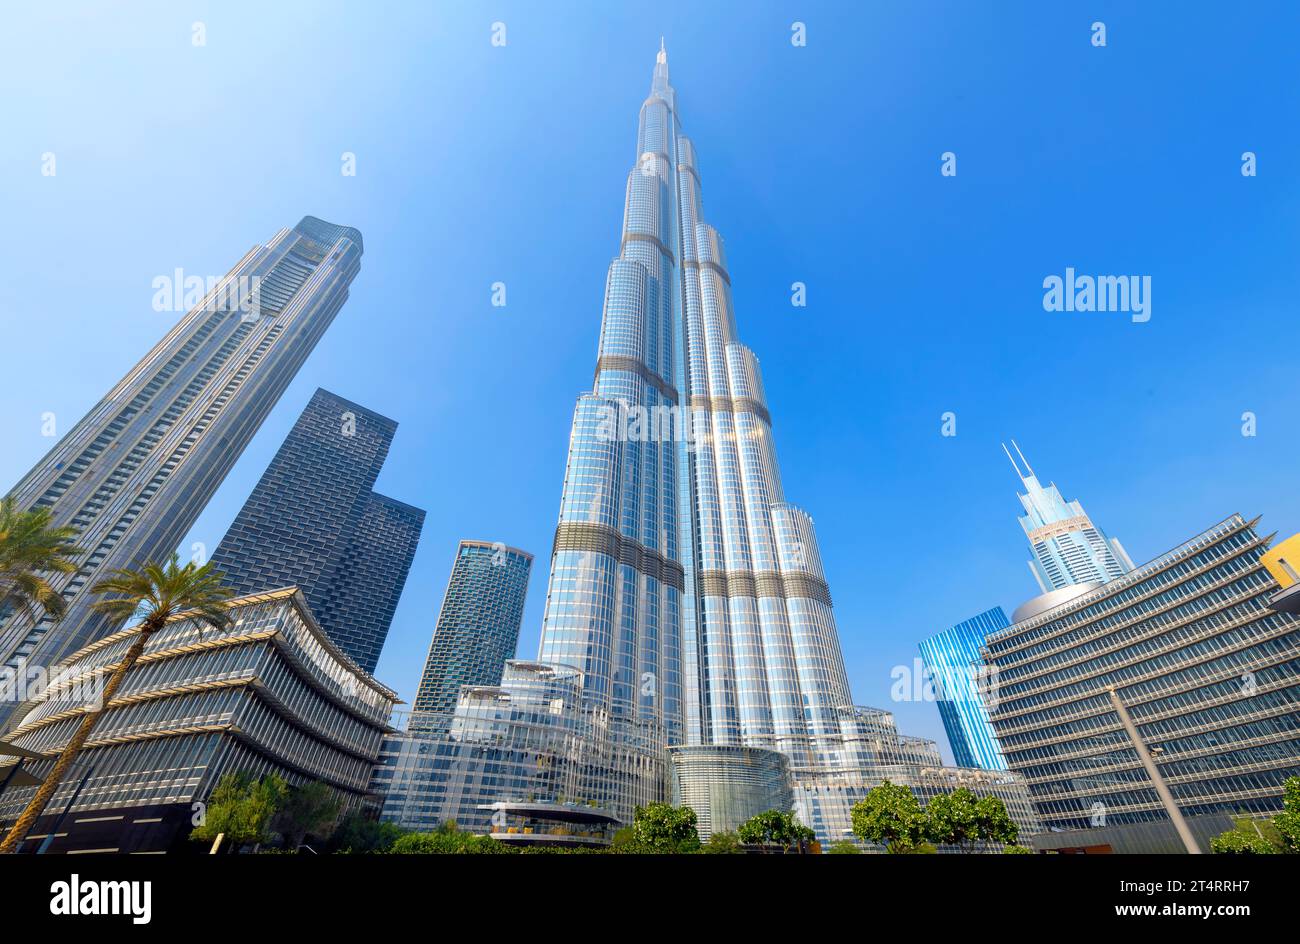 Vue à faible angle du gratte-ciel Burj Khalifa, le plus haut bâtiment du monde, dans le quartier commercial du centre-ville de Dubaï, Émirats arabes Unis Banque D'Images